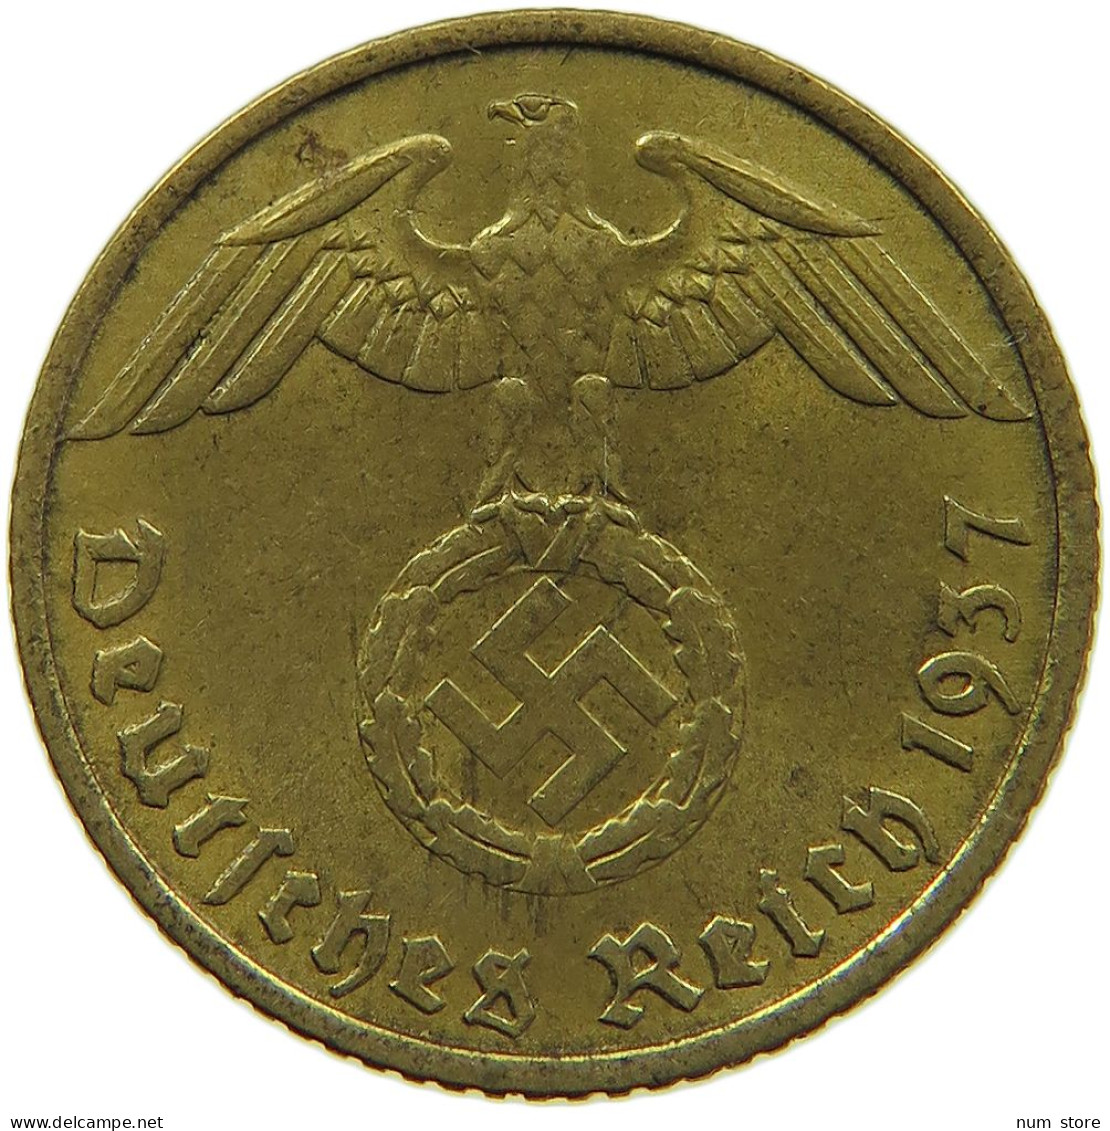 GERMANY 5 REICHSPFENNIG 1937 A #s091 0617 - 5 Reichspfennig